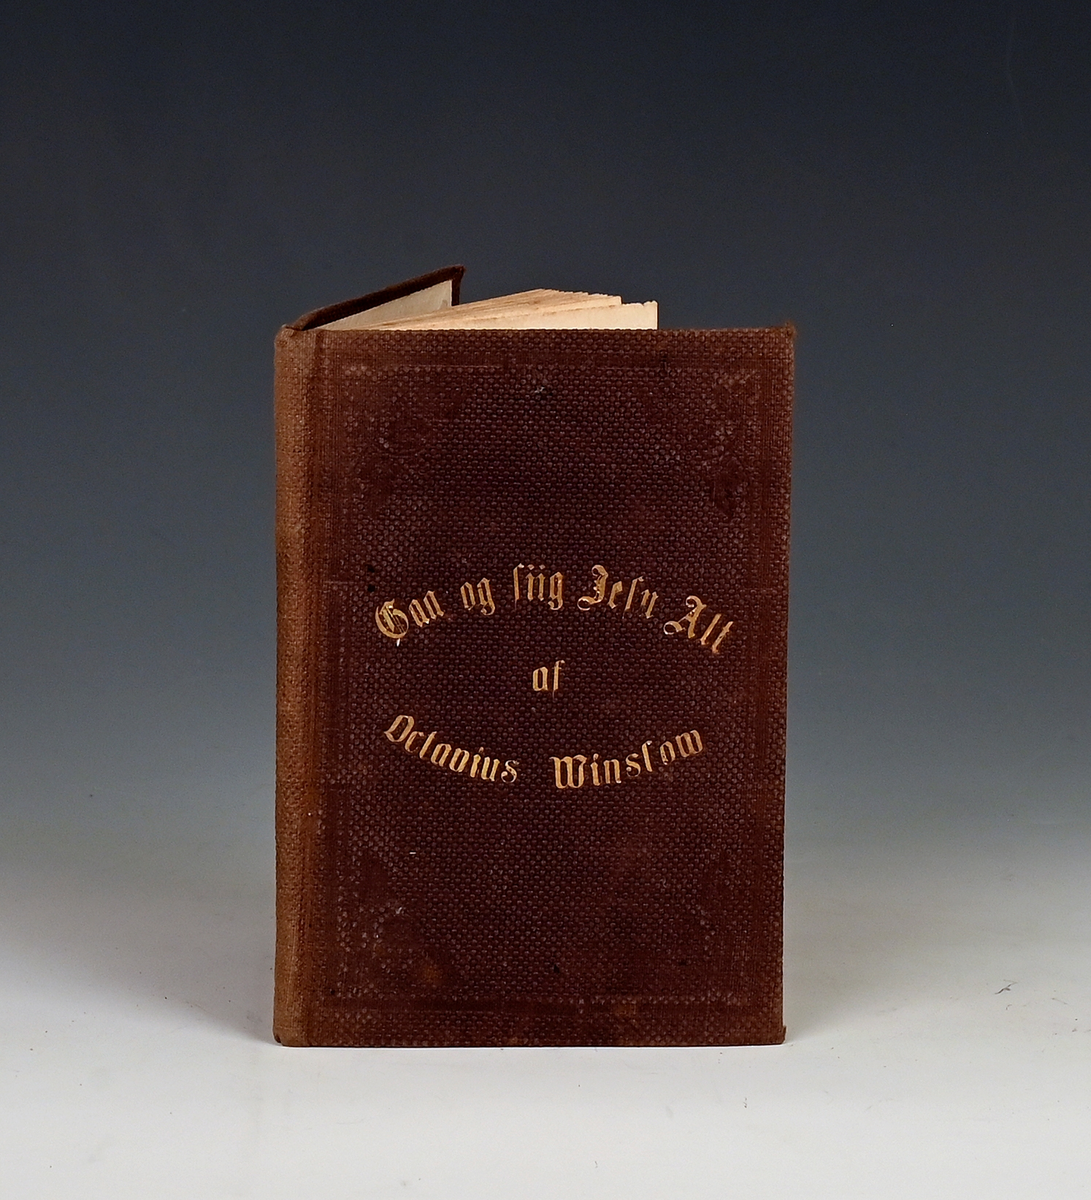 Prot: Winslow, Octavius, Gaa og siig Jesu Alt! En Nytaarsbetragtning. 2. Opl. Chr.a. 1862. 59 s. + 2 bl. 8. Brunt kanvasbd med blindprent og namn i gull.